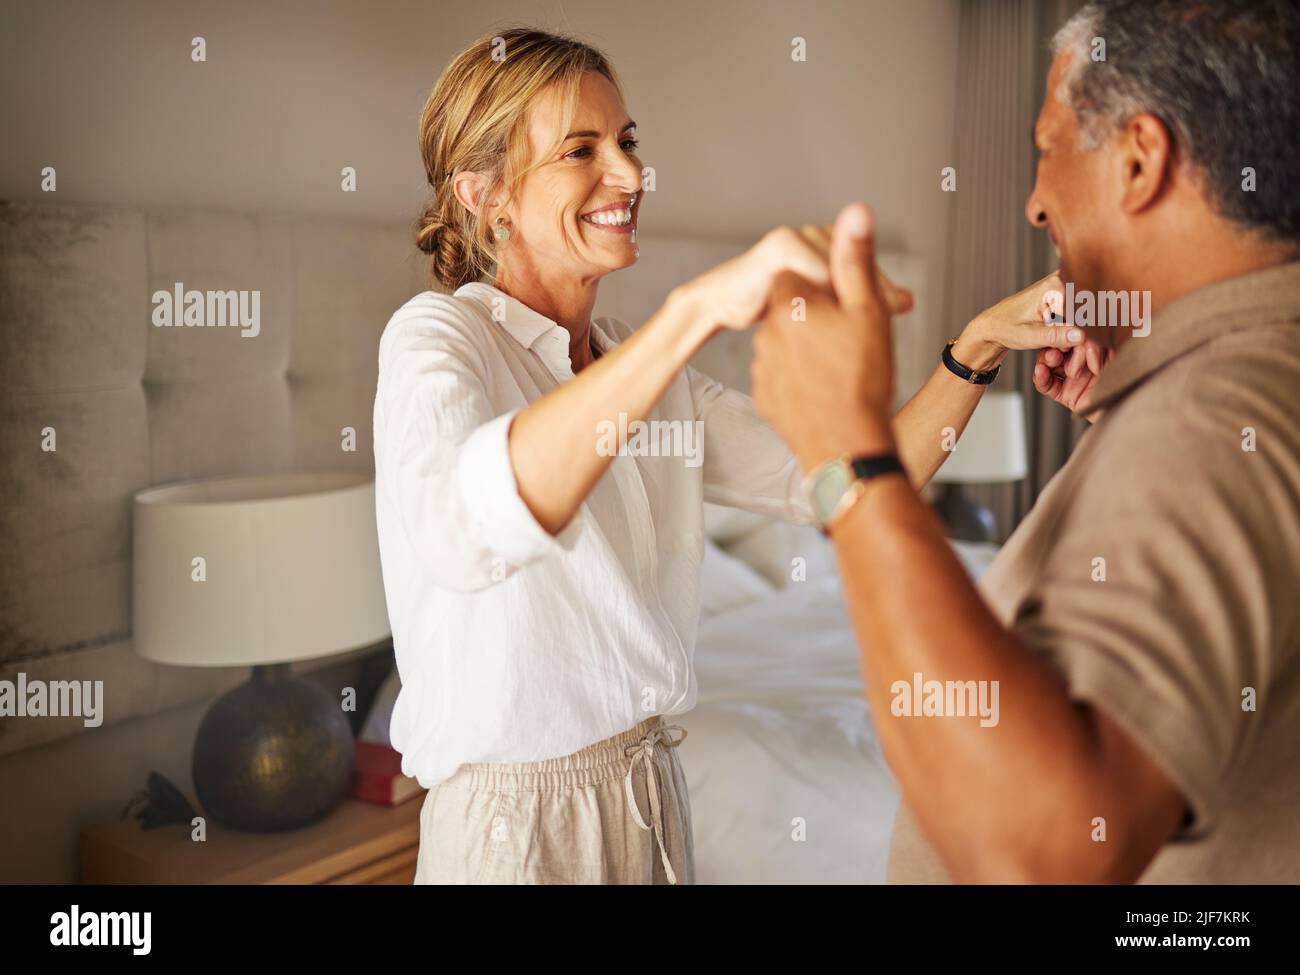 Ein älteres interrassisches Paar, das in einem Hotelzimmer zusammen in einem romantischen Urlaub tanzt. Älterer hispanischer Mann und kaukasische Frau, die lächeln und anspielen Stockfoto